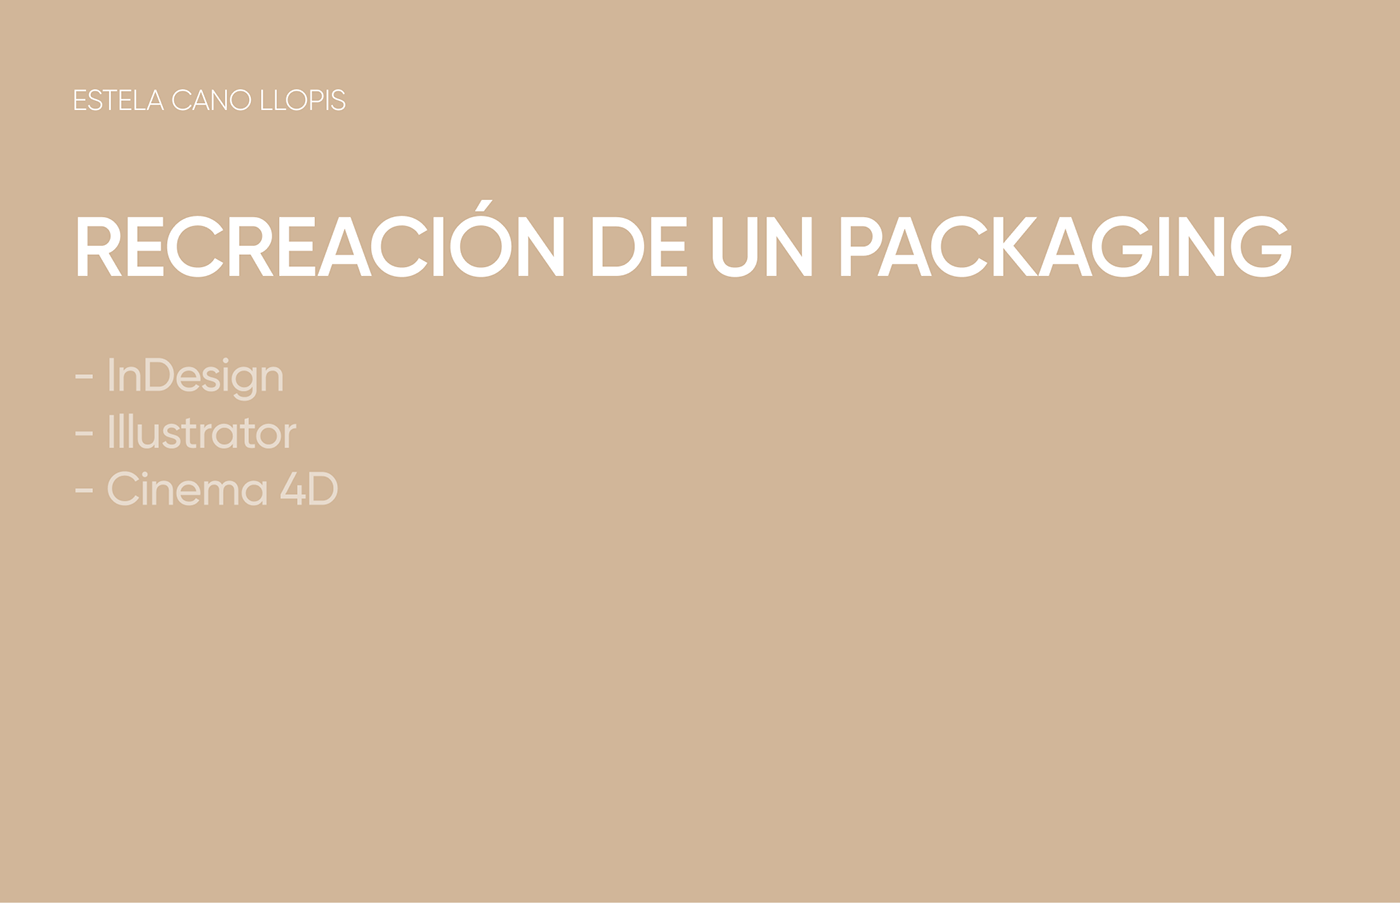 cinema 4d Illustrator InDesign packagign packaging design Render